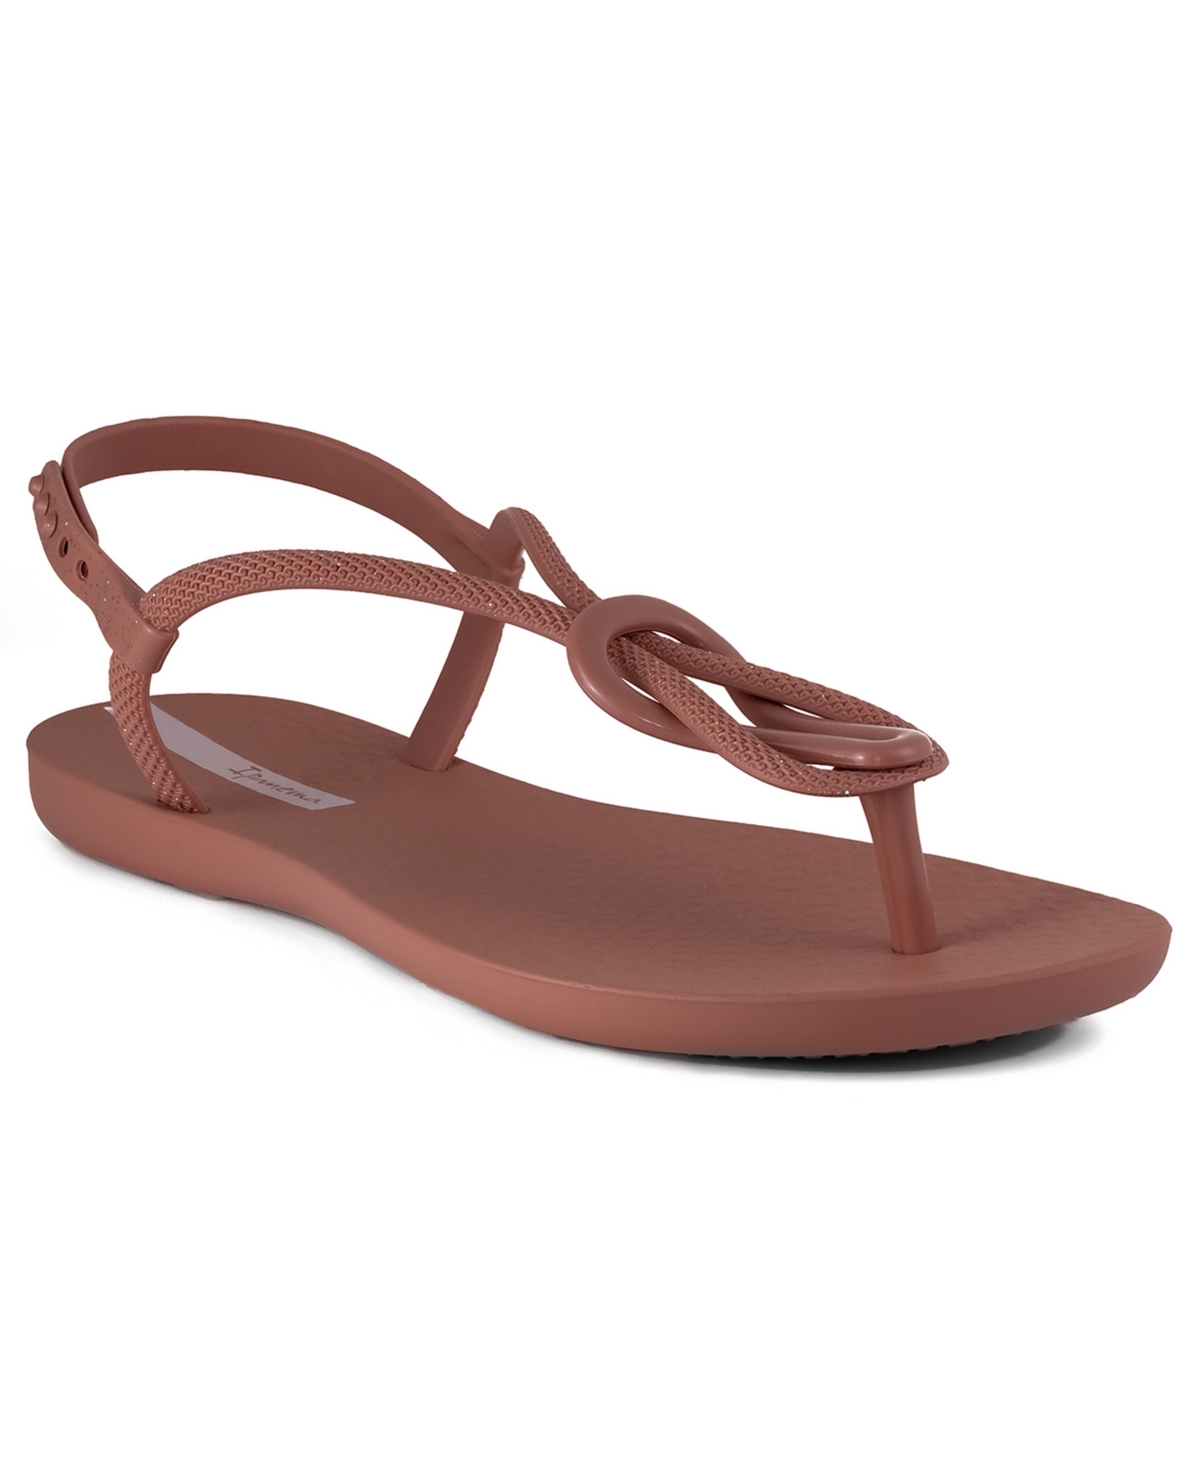 Women's Trendy T-strap Flat Sandals - Beige, Beige